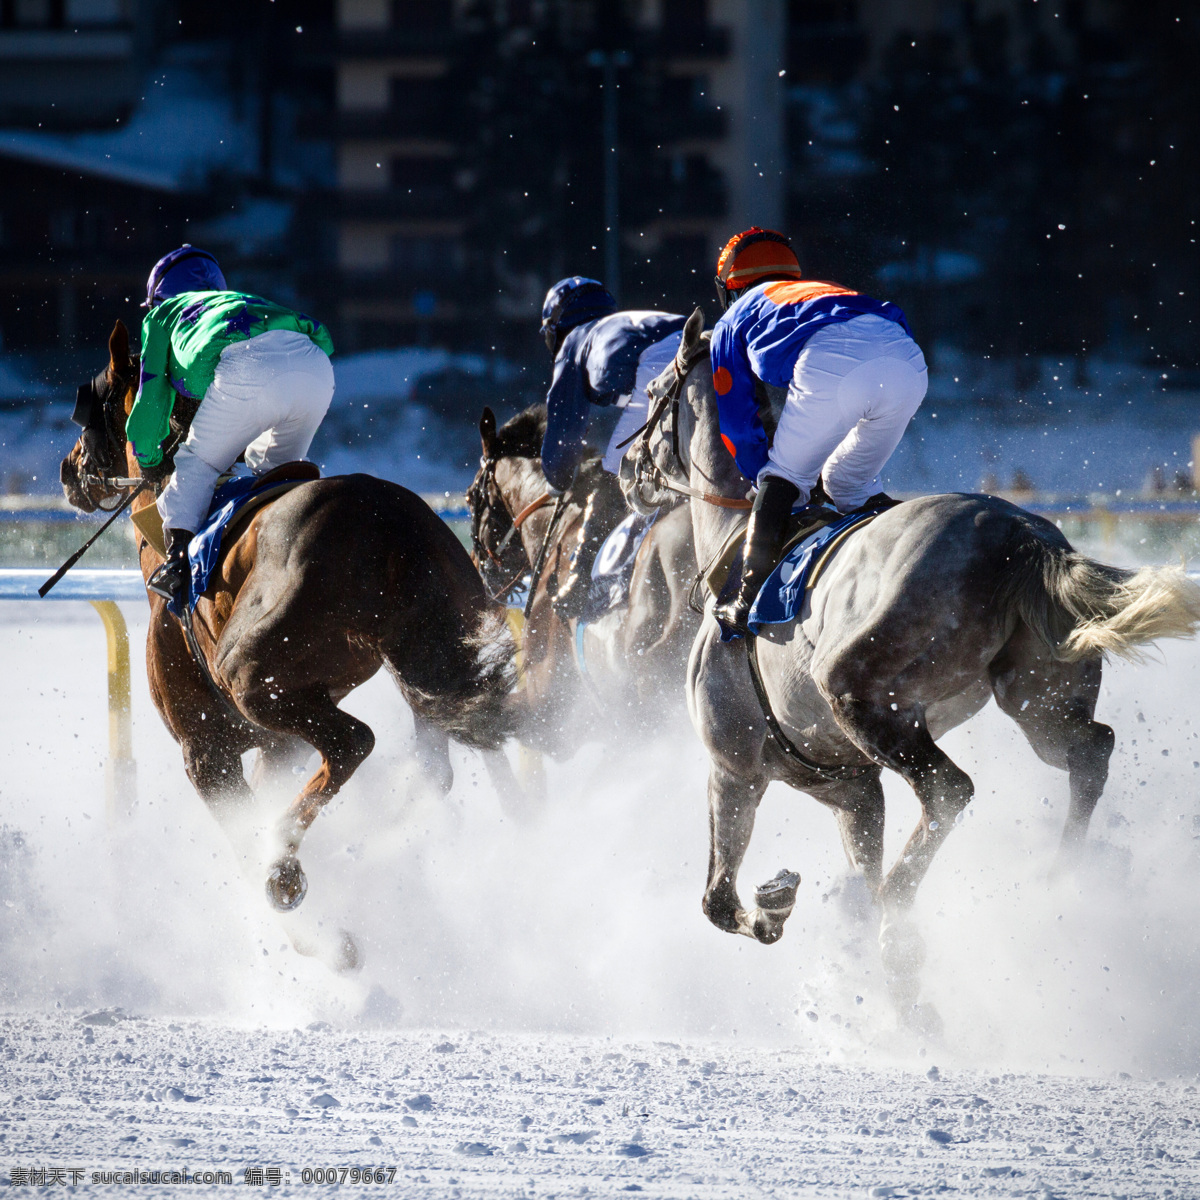 白雪 奔马 奔跑 比赛 动物世界 马年素材 赛马 马 驯马 狂奔 雪地 冬季赛马 生物世界 体育运动 文化艺术 节日素材 2015羊年